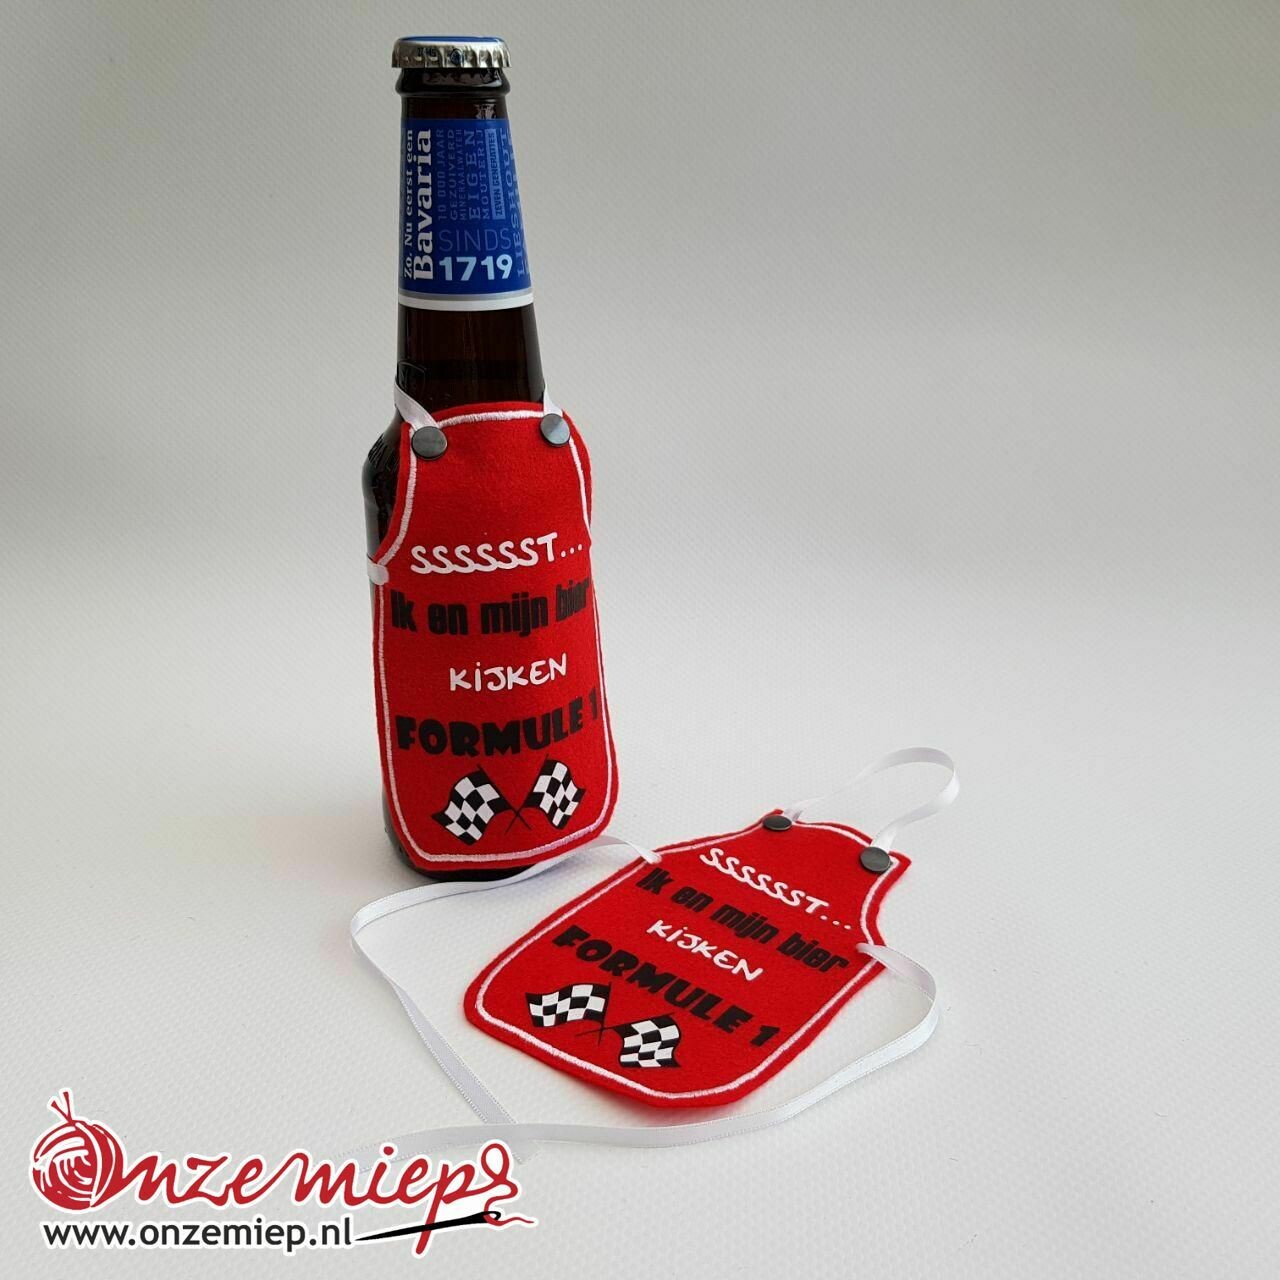 Rood schortje voor bierfles met "Sssssst... Ik en mijn bier kijken Formule 1"